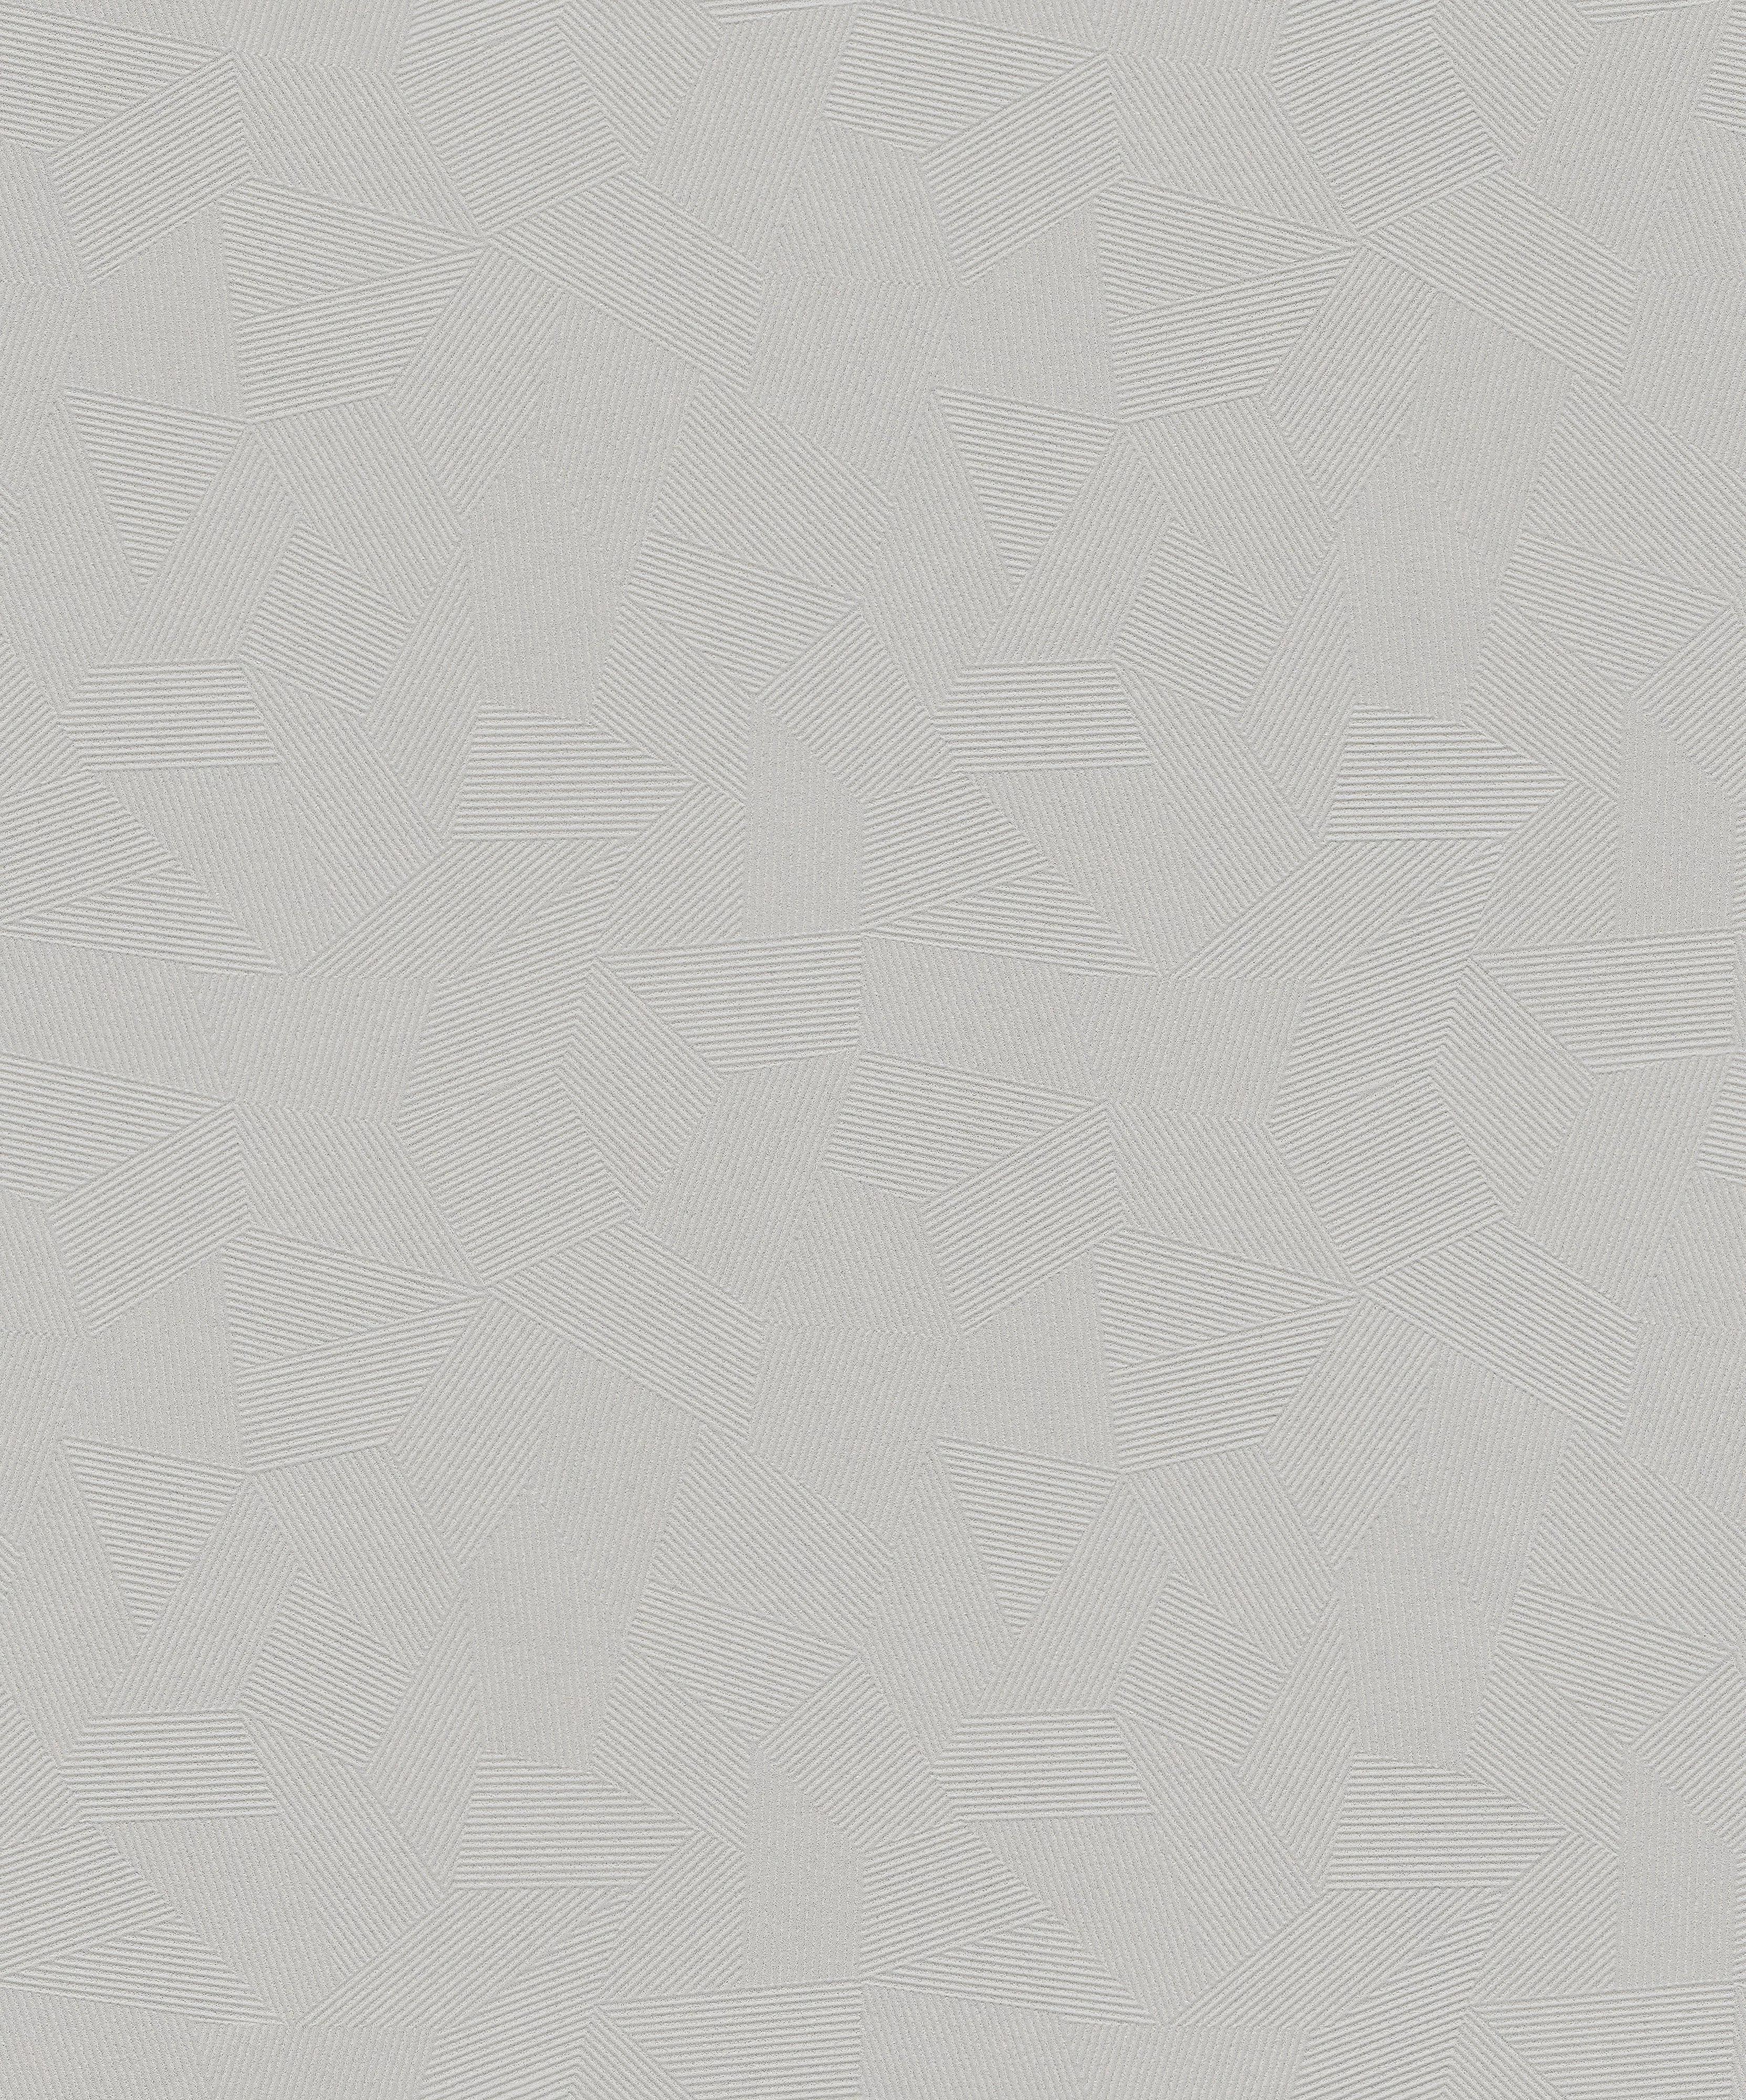 Szürke-ezüst csillogó felületű geometrikus mintás vlies tapéta